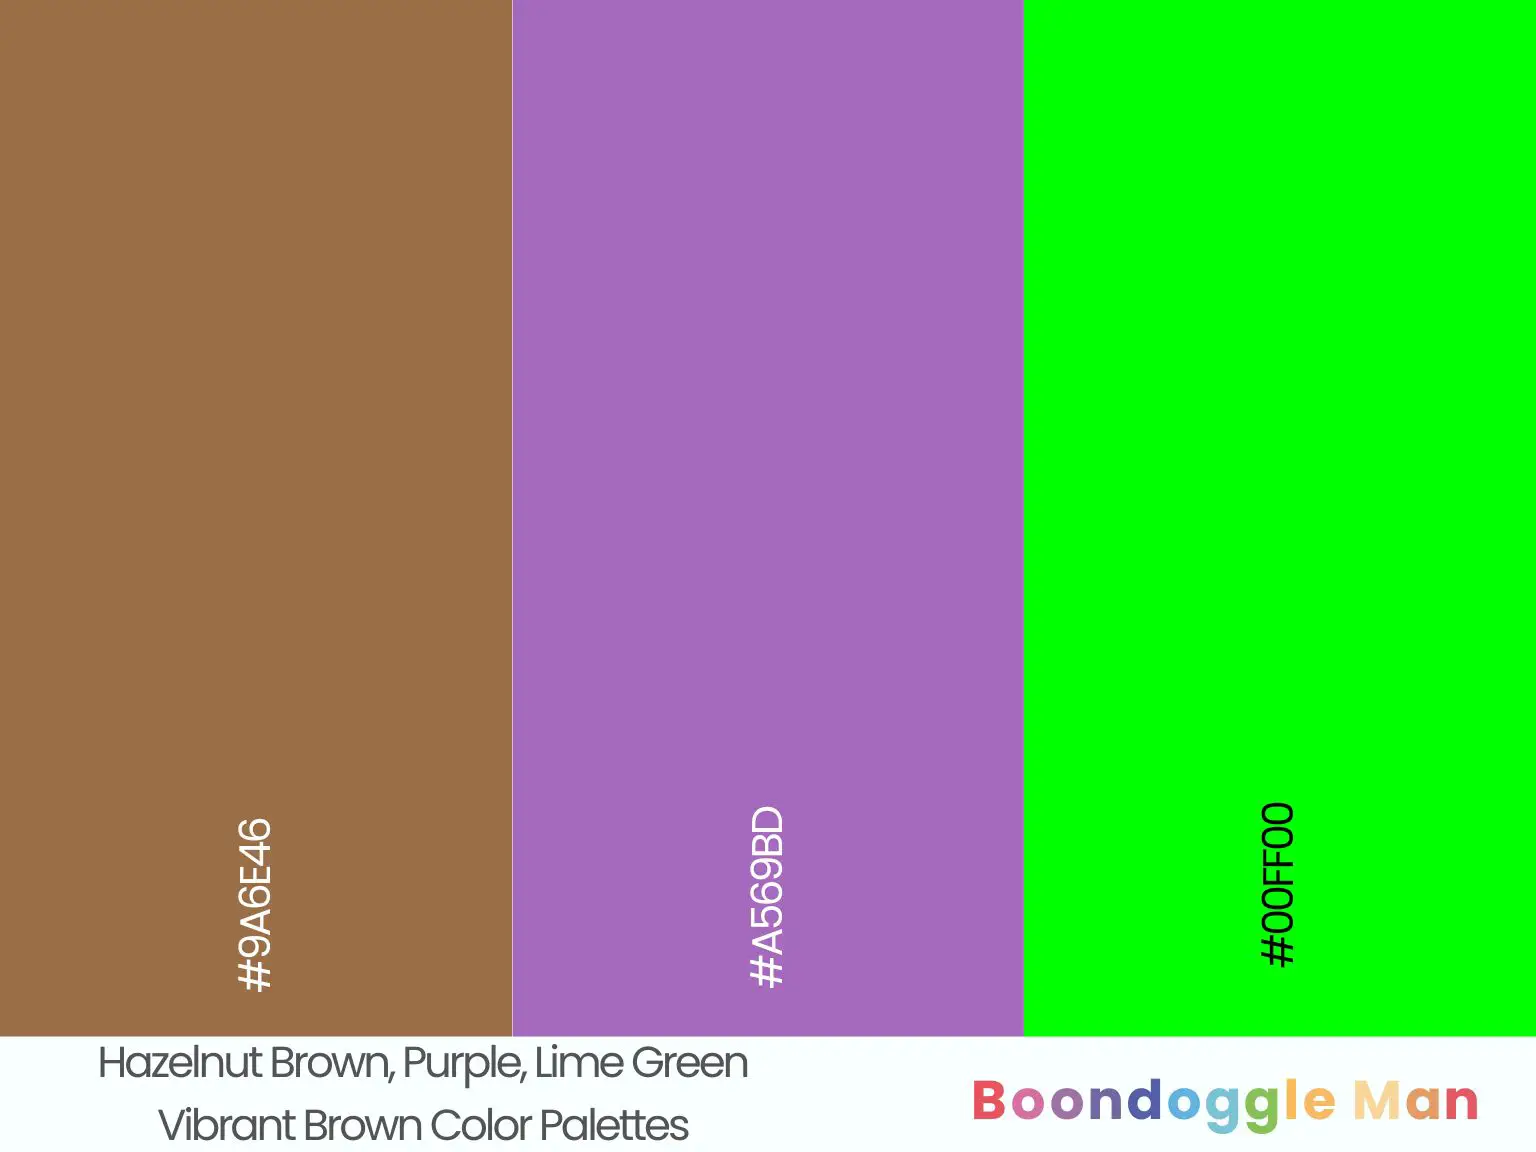 Hazelnut Brown, Purple, Lime Green